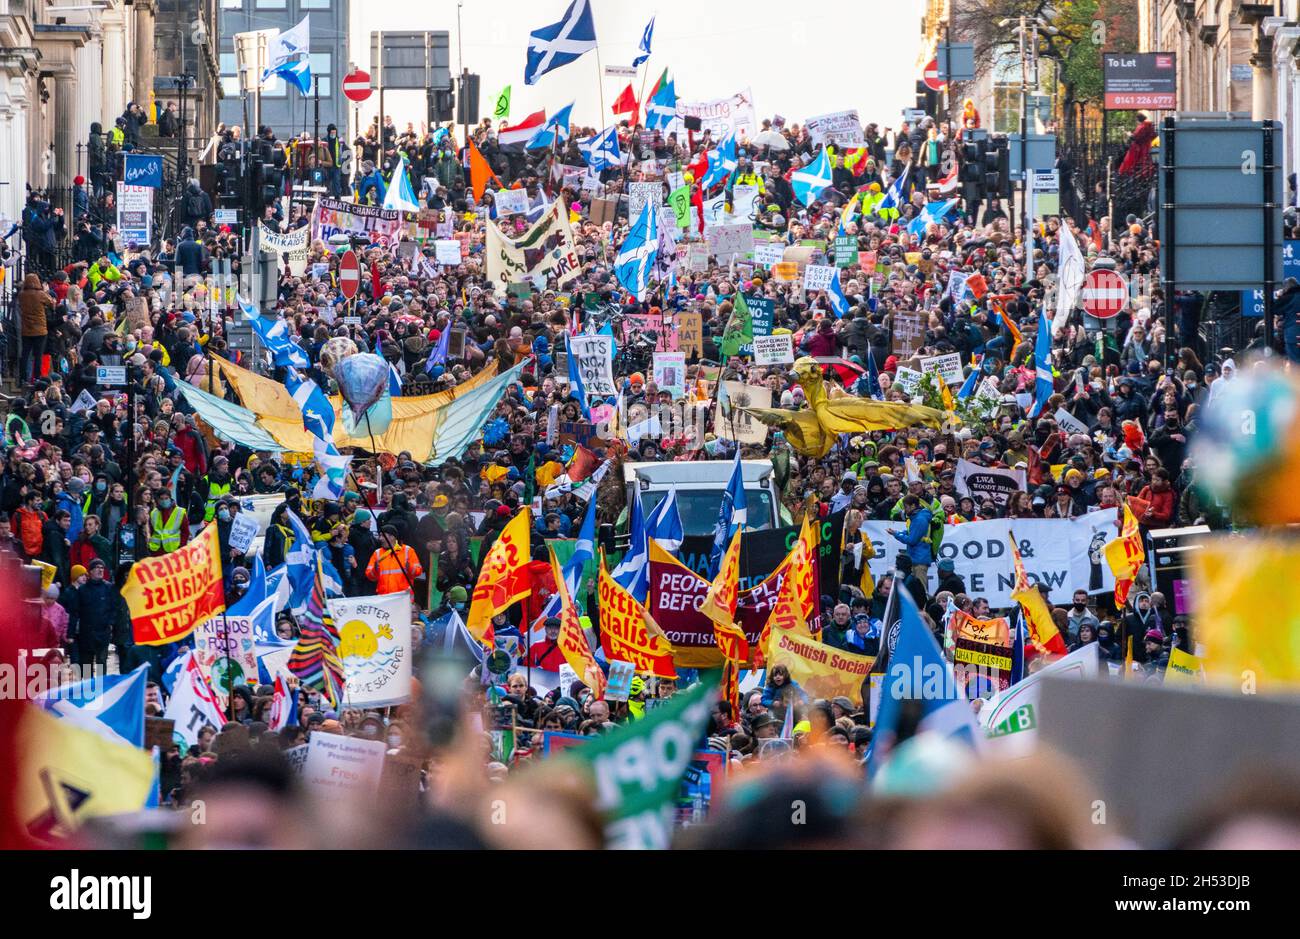 Glasgow, Scozia, Regno Unito. 6 novembre 2021. Giornata globale d'azione per la giustizia climatica marcia che si svolge nel centro di Glasgow. , Scozia, Regno Unito. PIC; Iain Masterton/Alamy Live News. Foto Stock